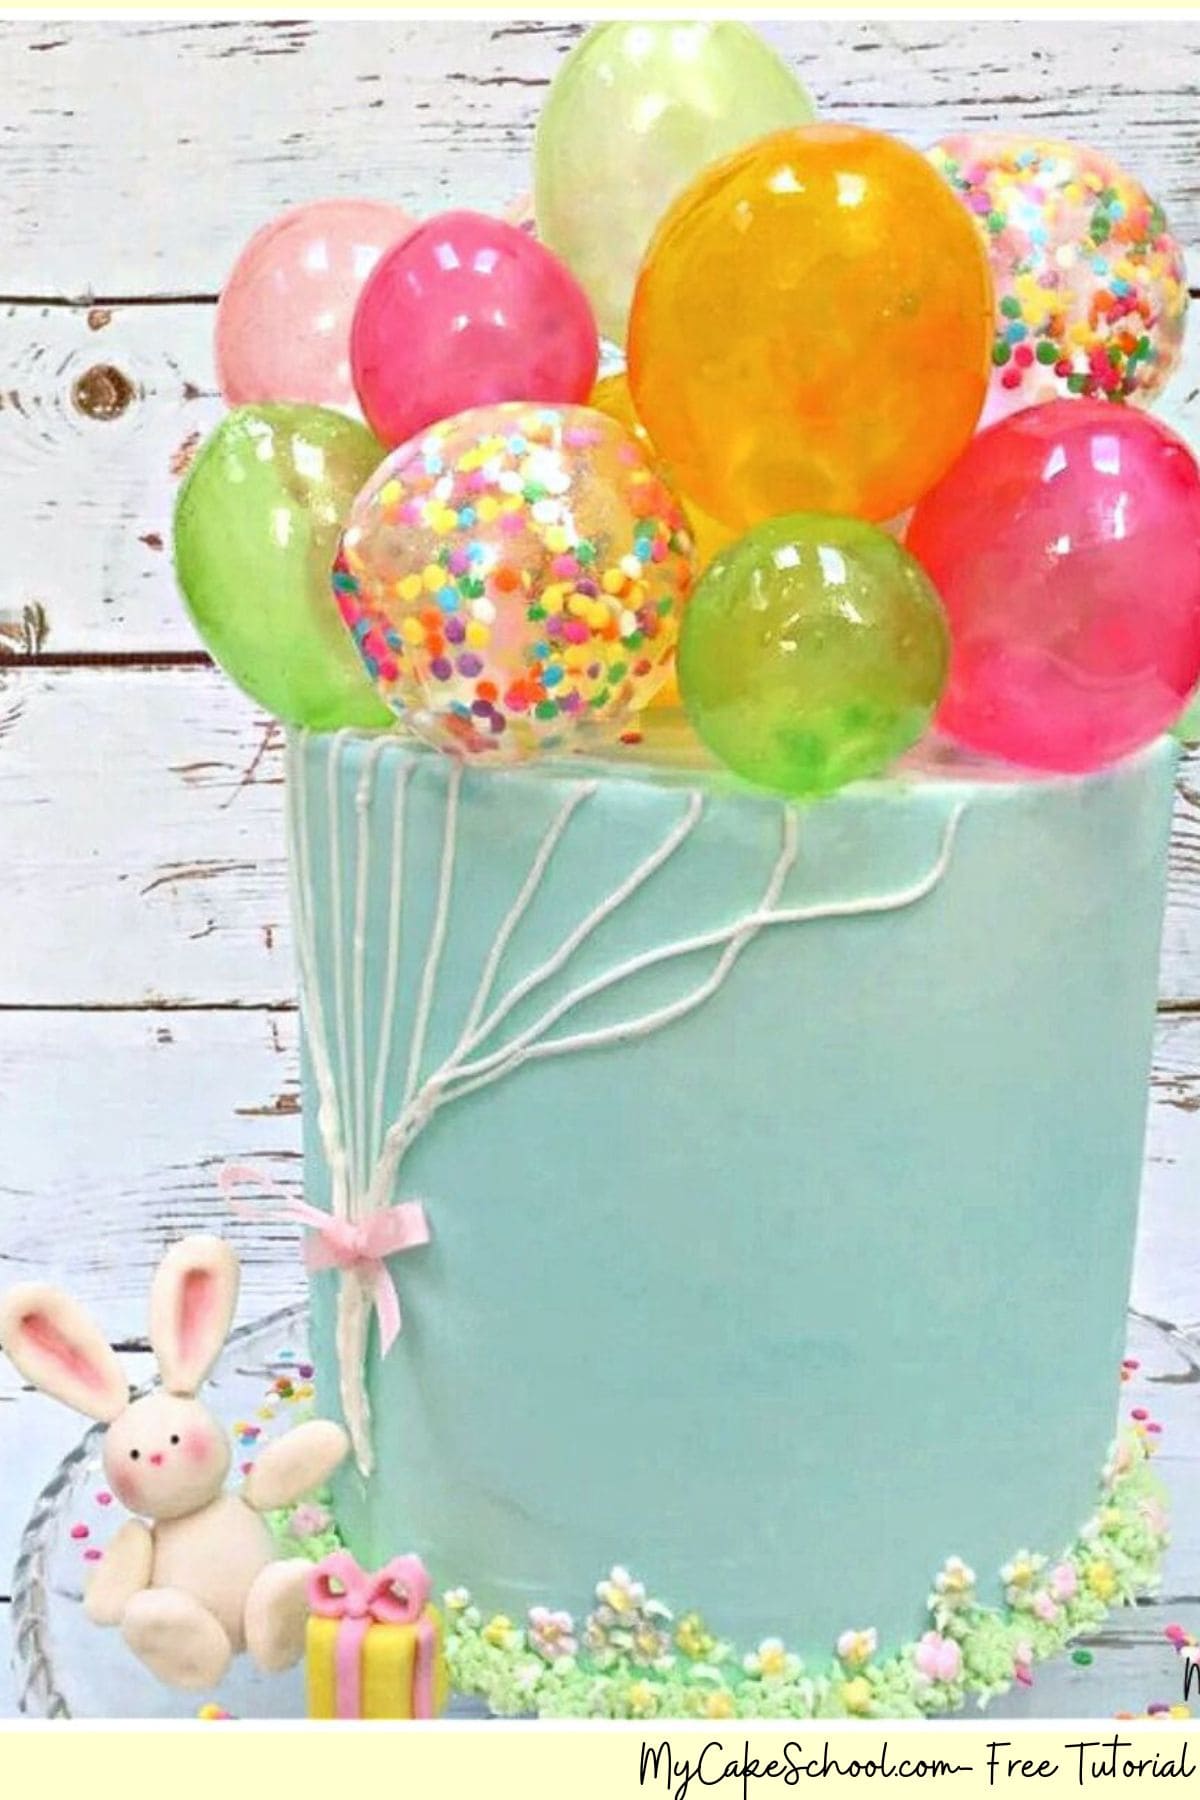 Gelatin Balloons Cake on a cake pedestal.